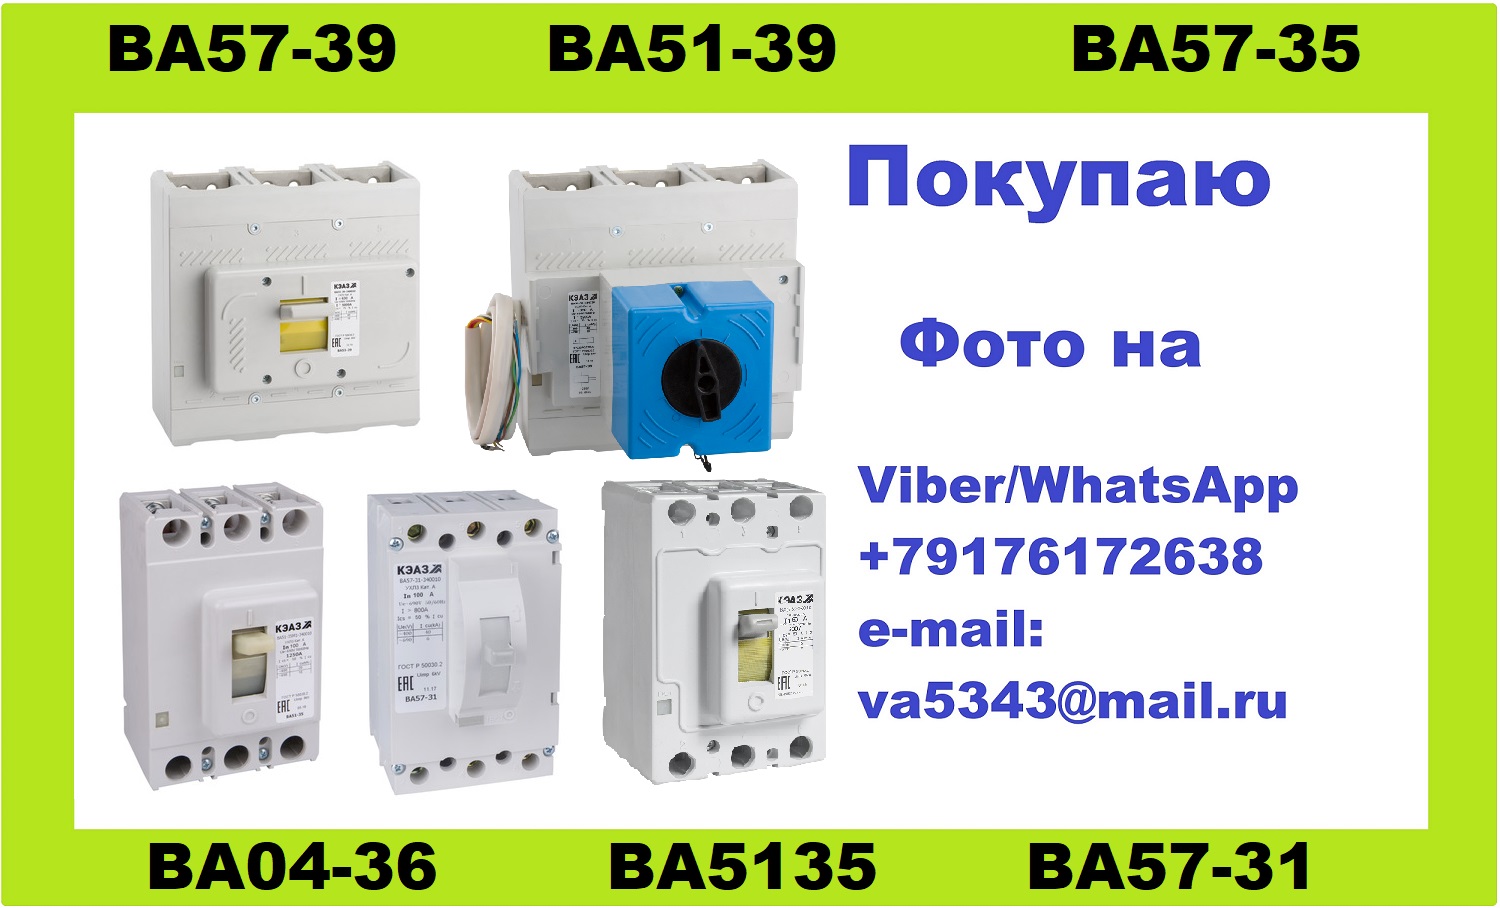 Покупаю автоматические выключатели серии ВА04-36, ВА51-35, ВА57-35 - фотография